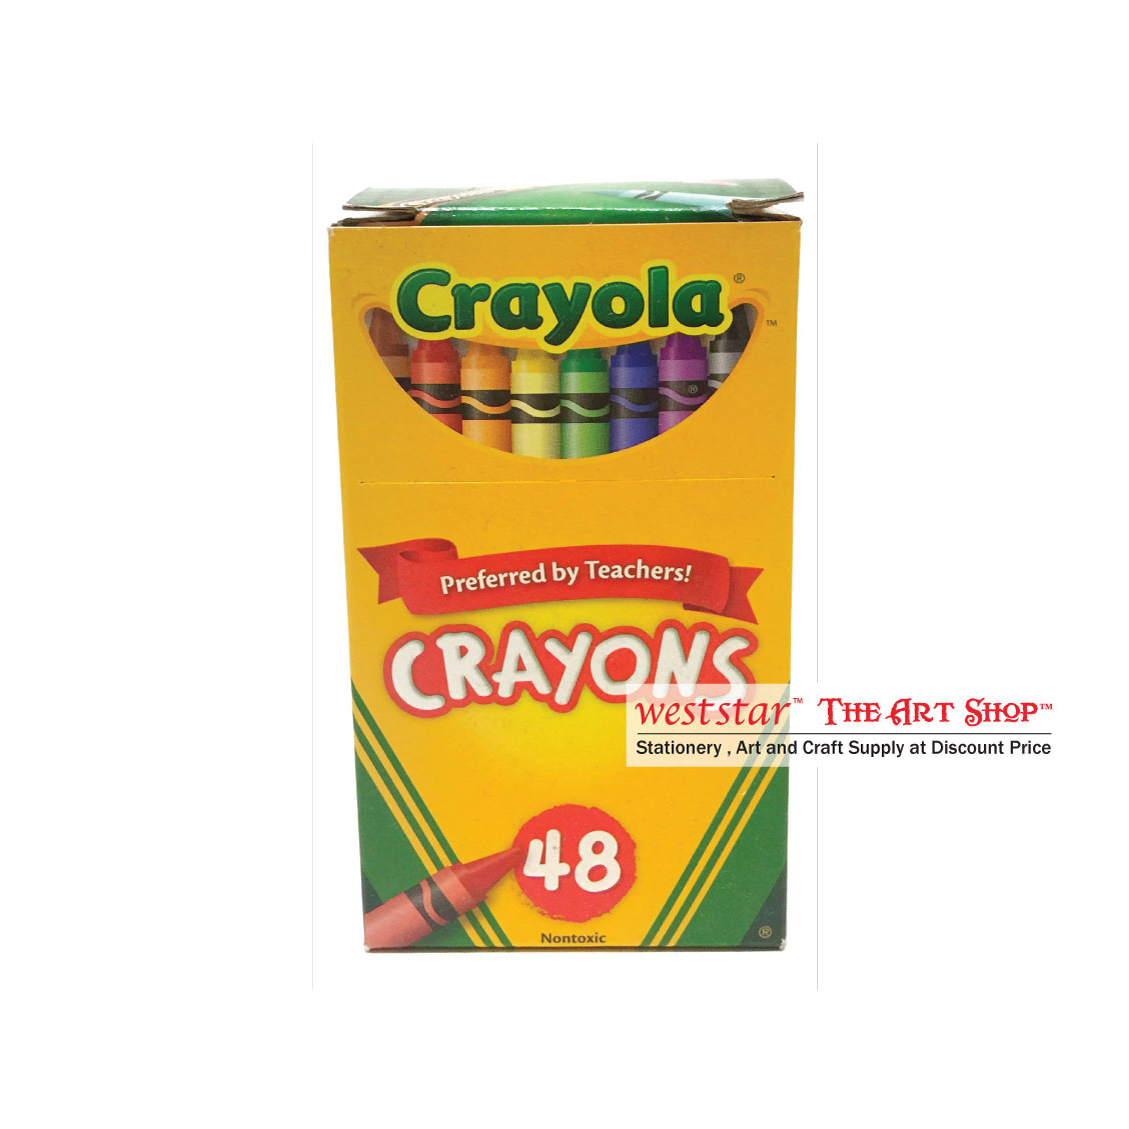 Crayola Crayon 48color